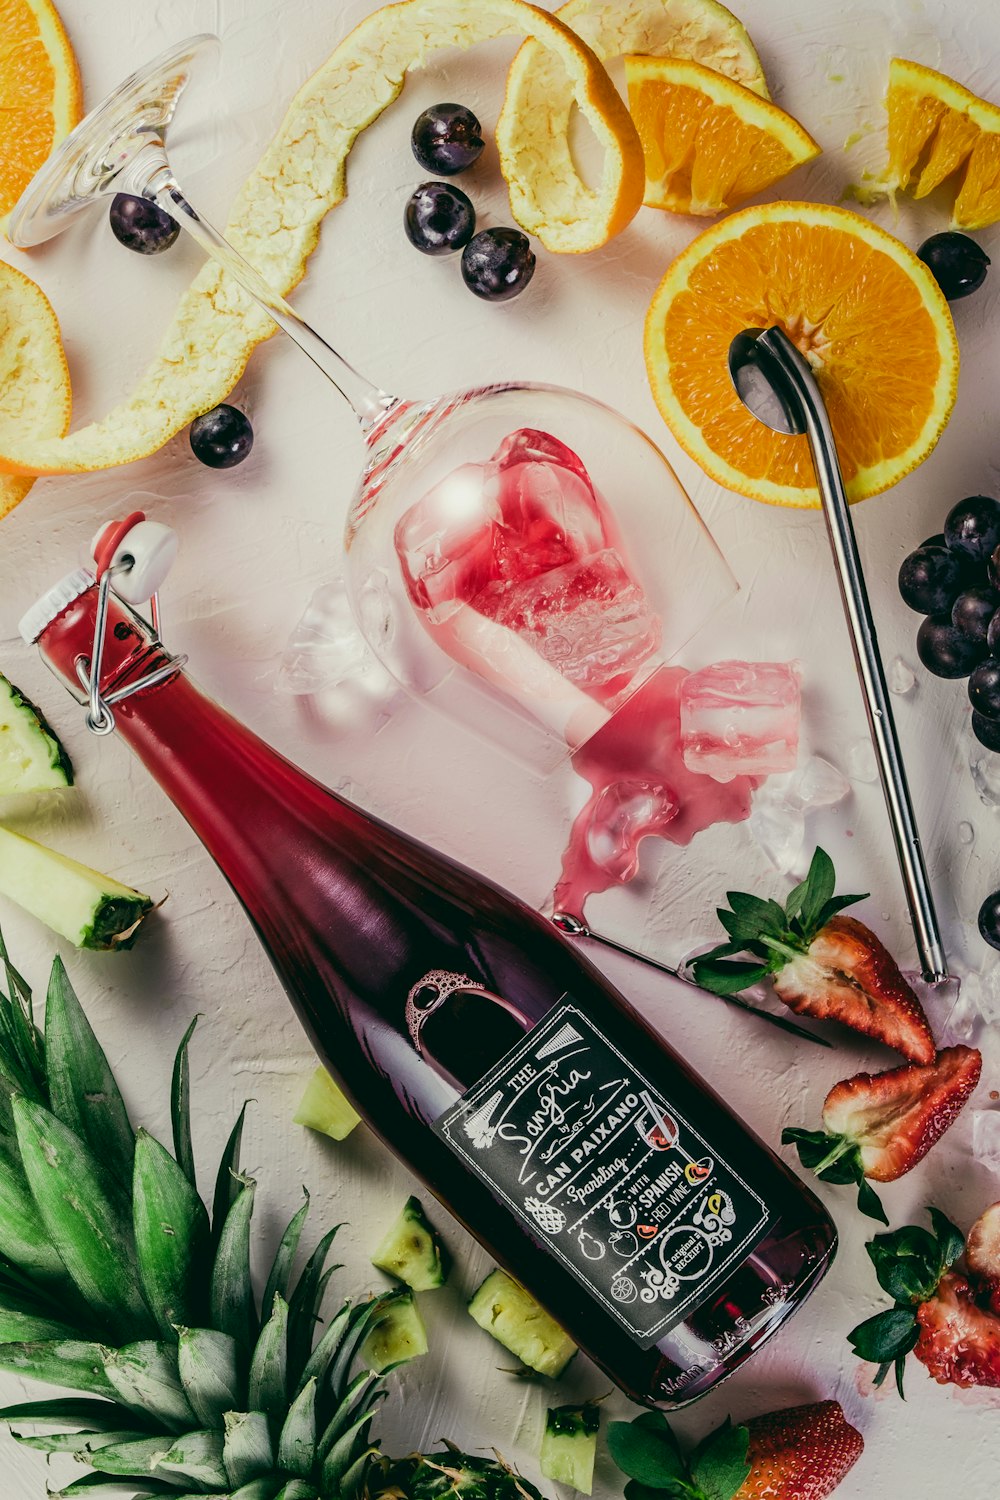 fotografia plana de frutas fatiadas, garrafa de balanço e copo de vinho